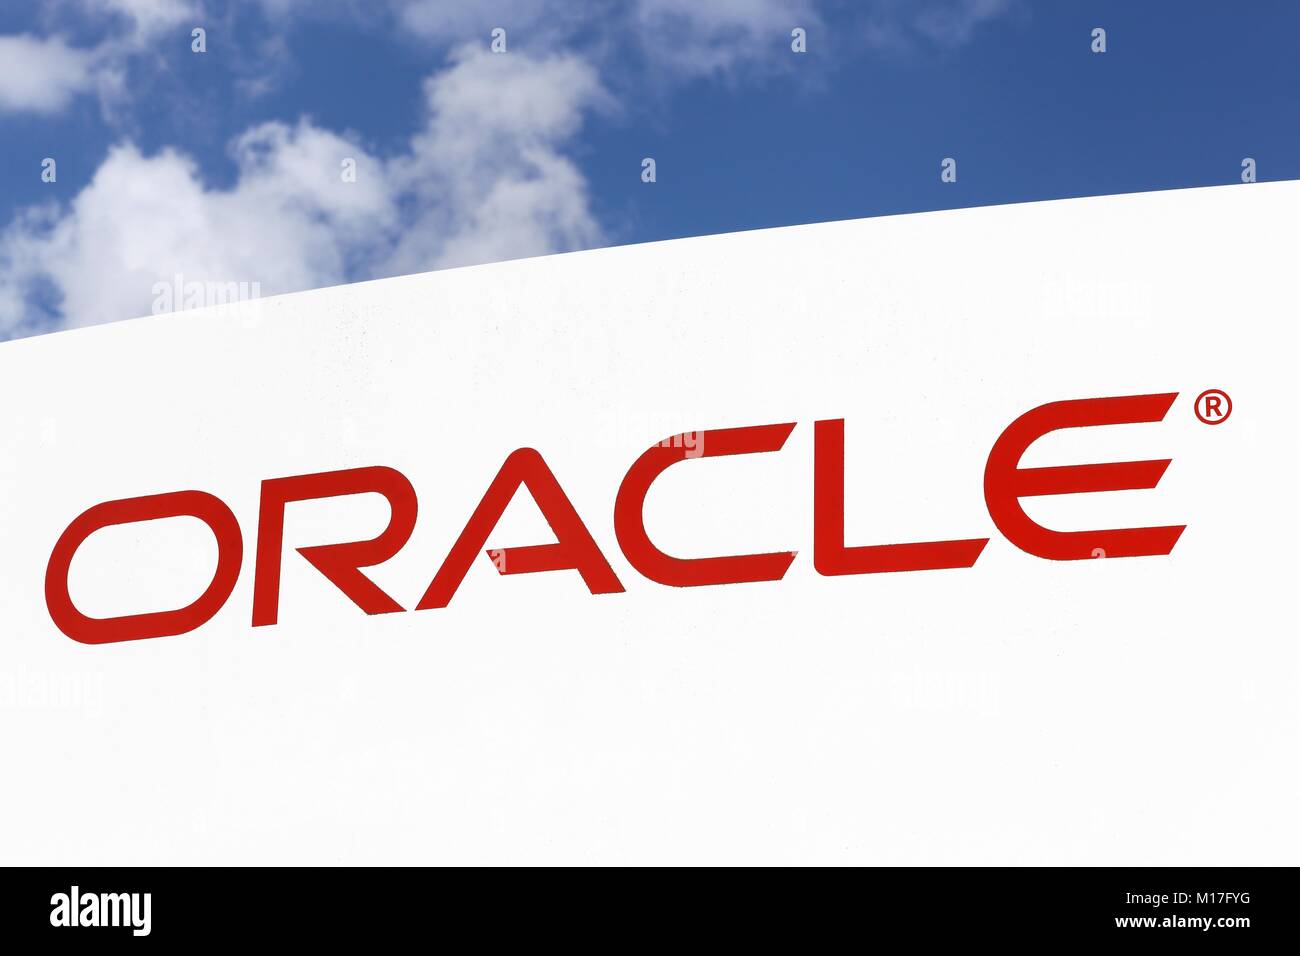 Ballerup, Danemark - 10 septembre 2017 : logo Oracle sur un panneau. Oracle Corporation est une multinationale américaine computer technology corporation Banque D'Images